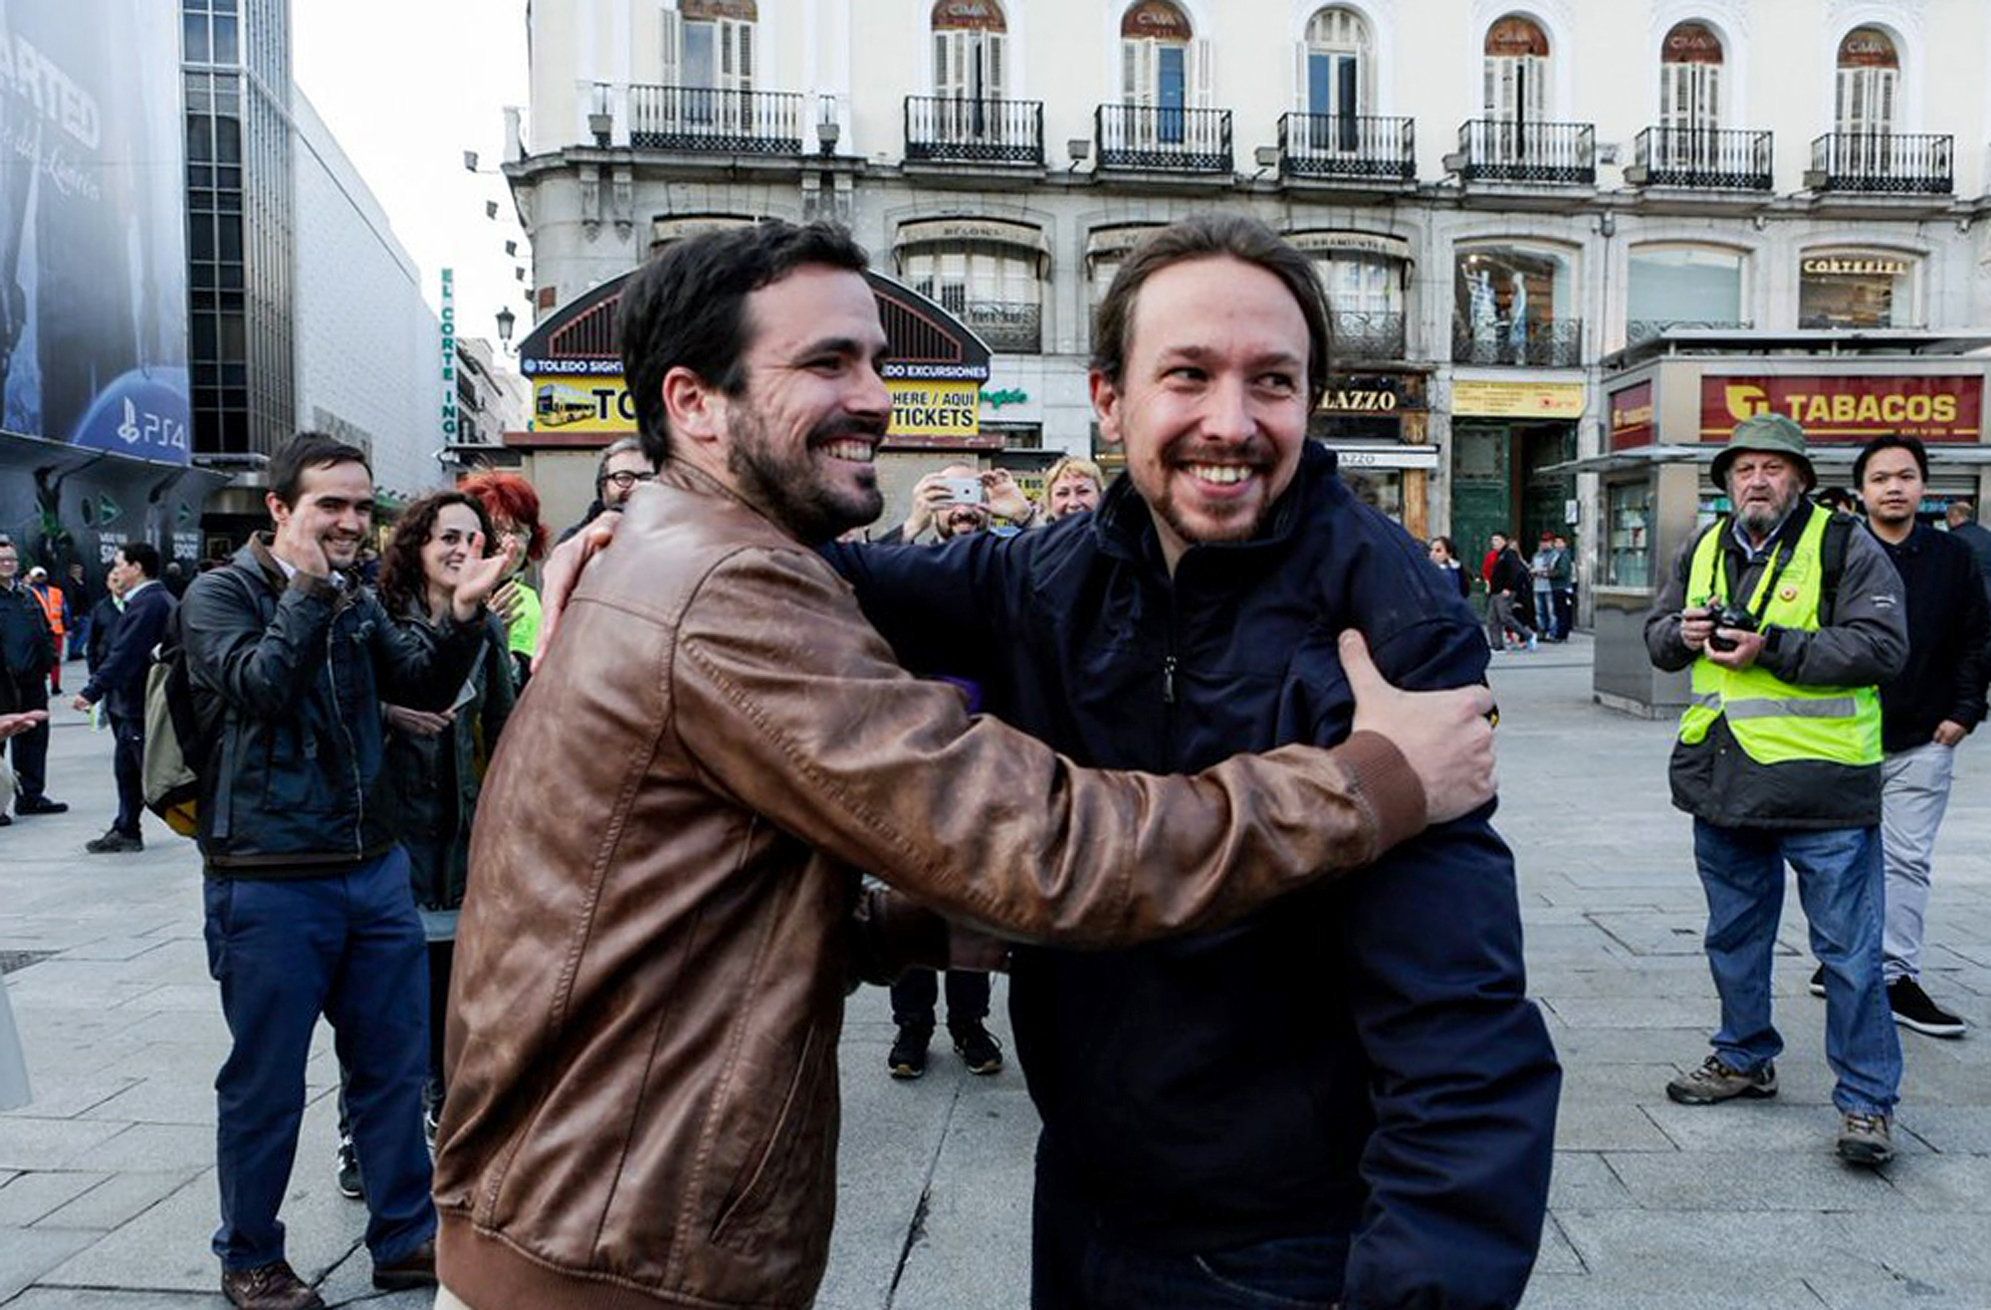 Les bases d'IU avalen el pacte amb Podemos